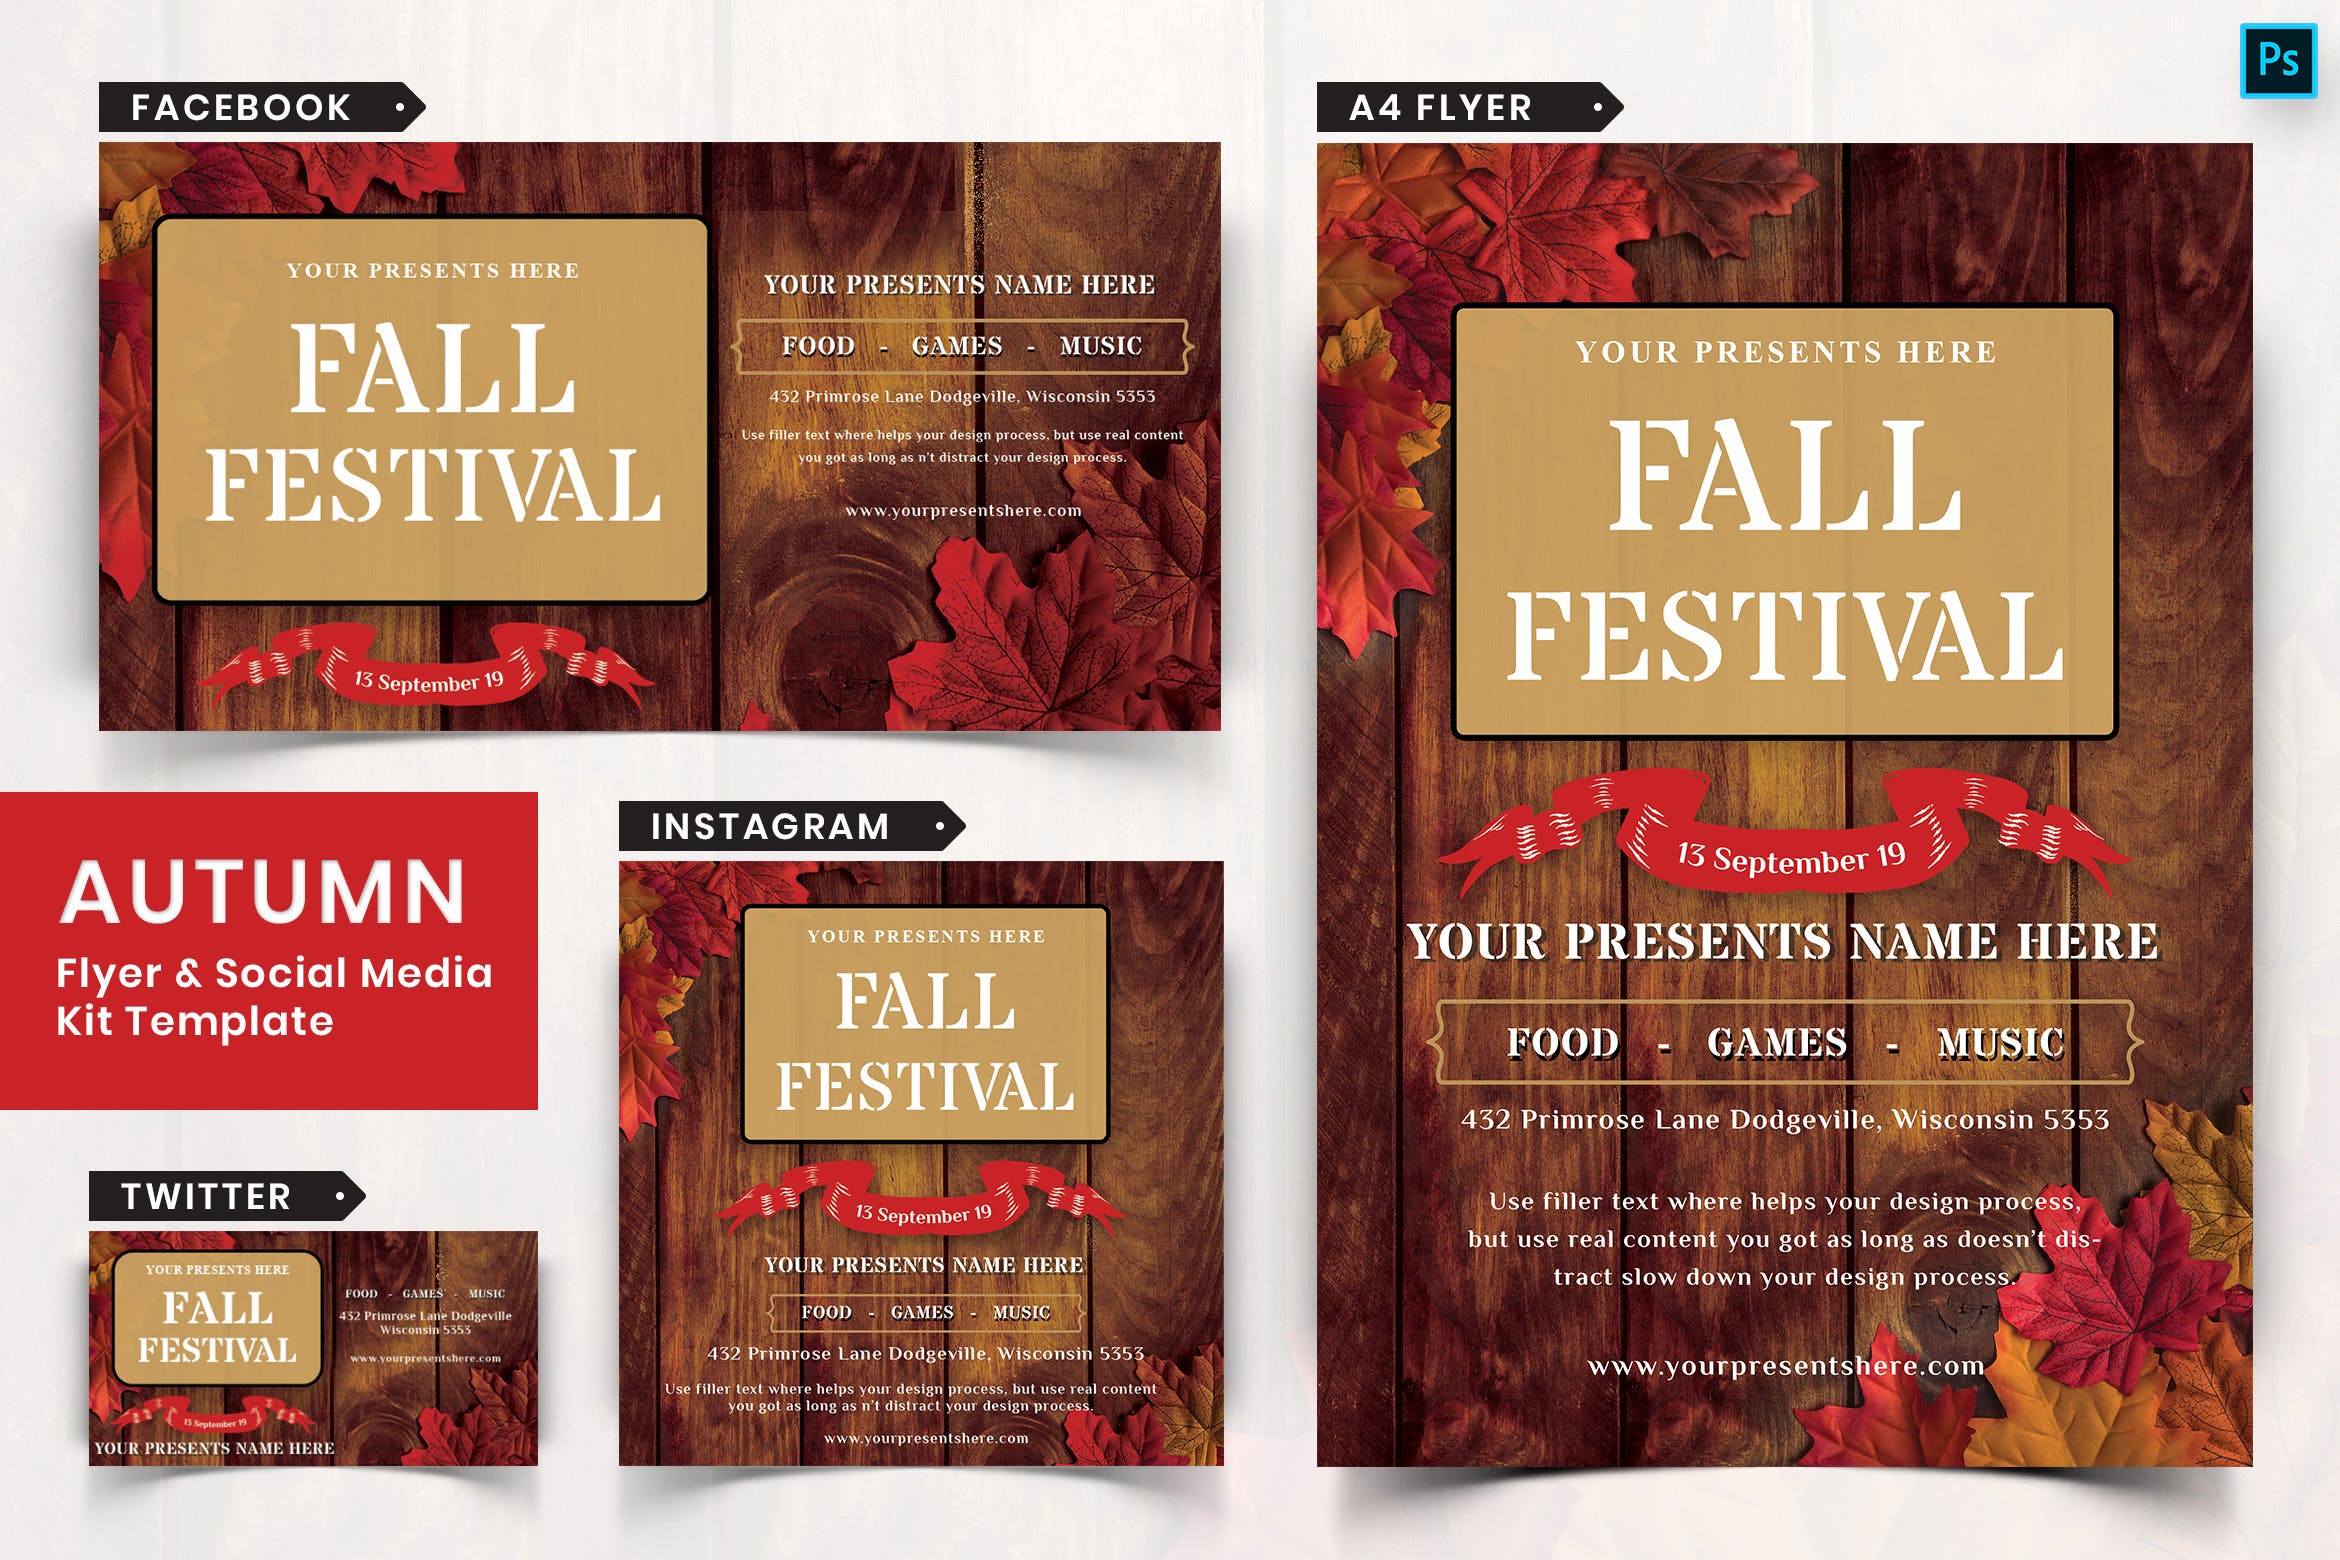 秋季节日传单和&社交媒体设计模板素材库精选套装06 Autumn Festival Flyer & Social Media Pack-06插图